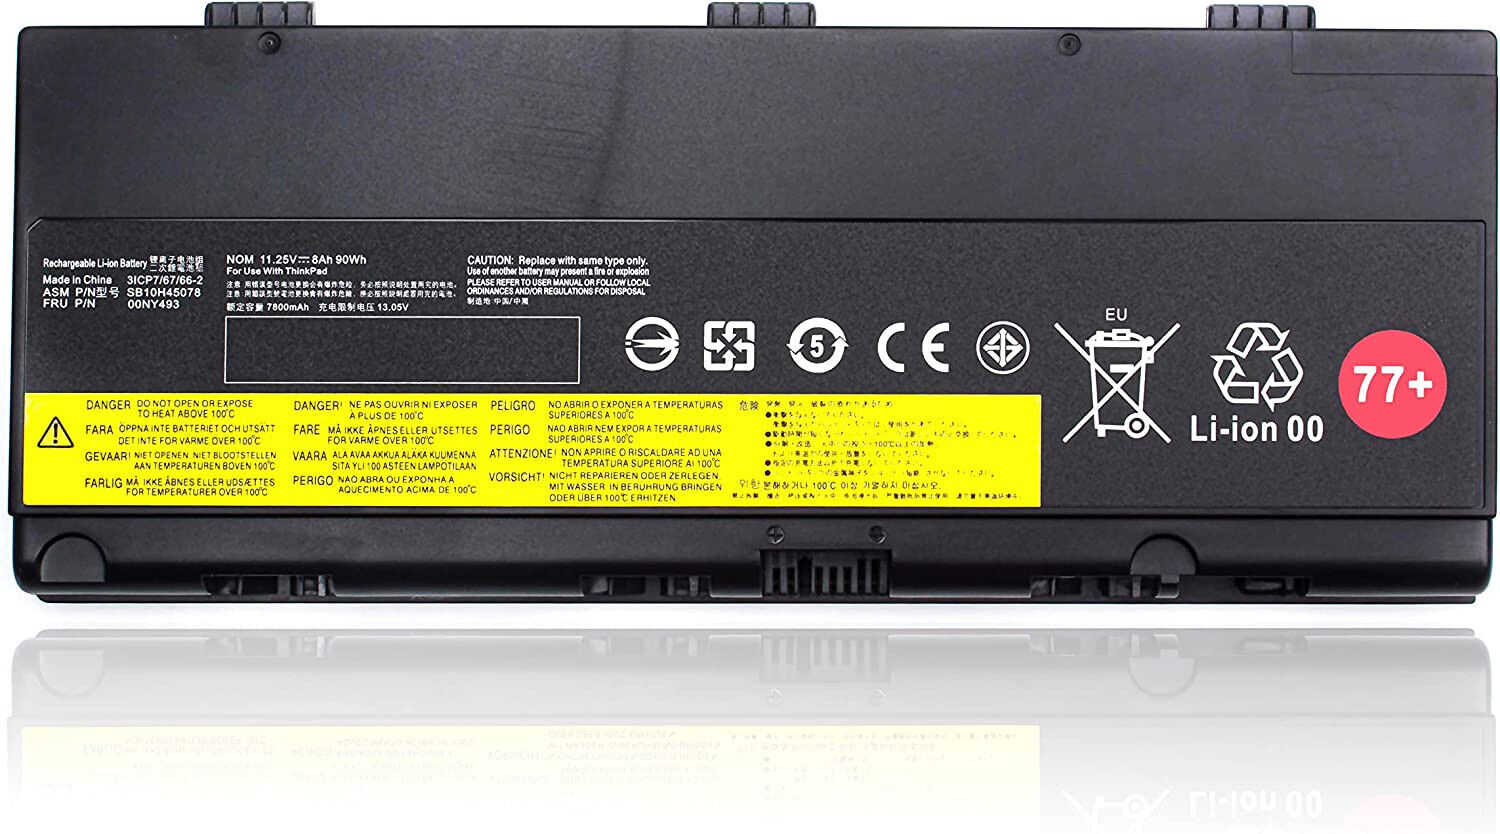 Type 01AV477 77+ Battery Replacement Battery for Lenovo ThinkPad P52 P51 P50